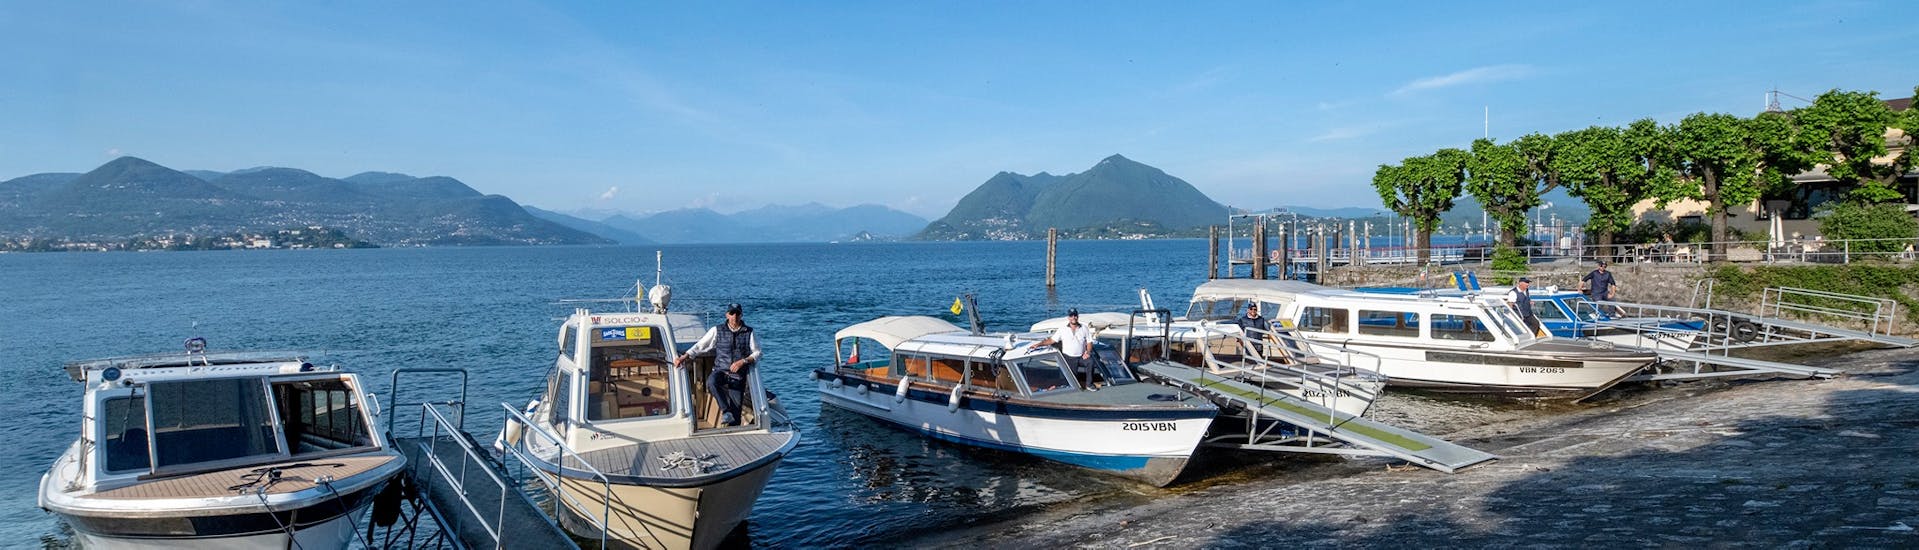 Uitzicht op de boten die gebruikt worden voor Boot Transfer van Stresa naar Isola Bella met Lake tours Stresa.